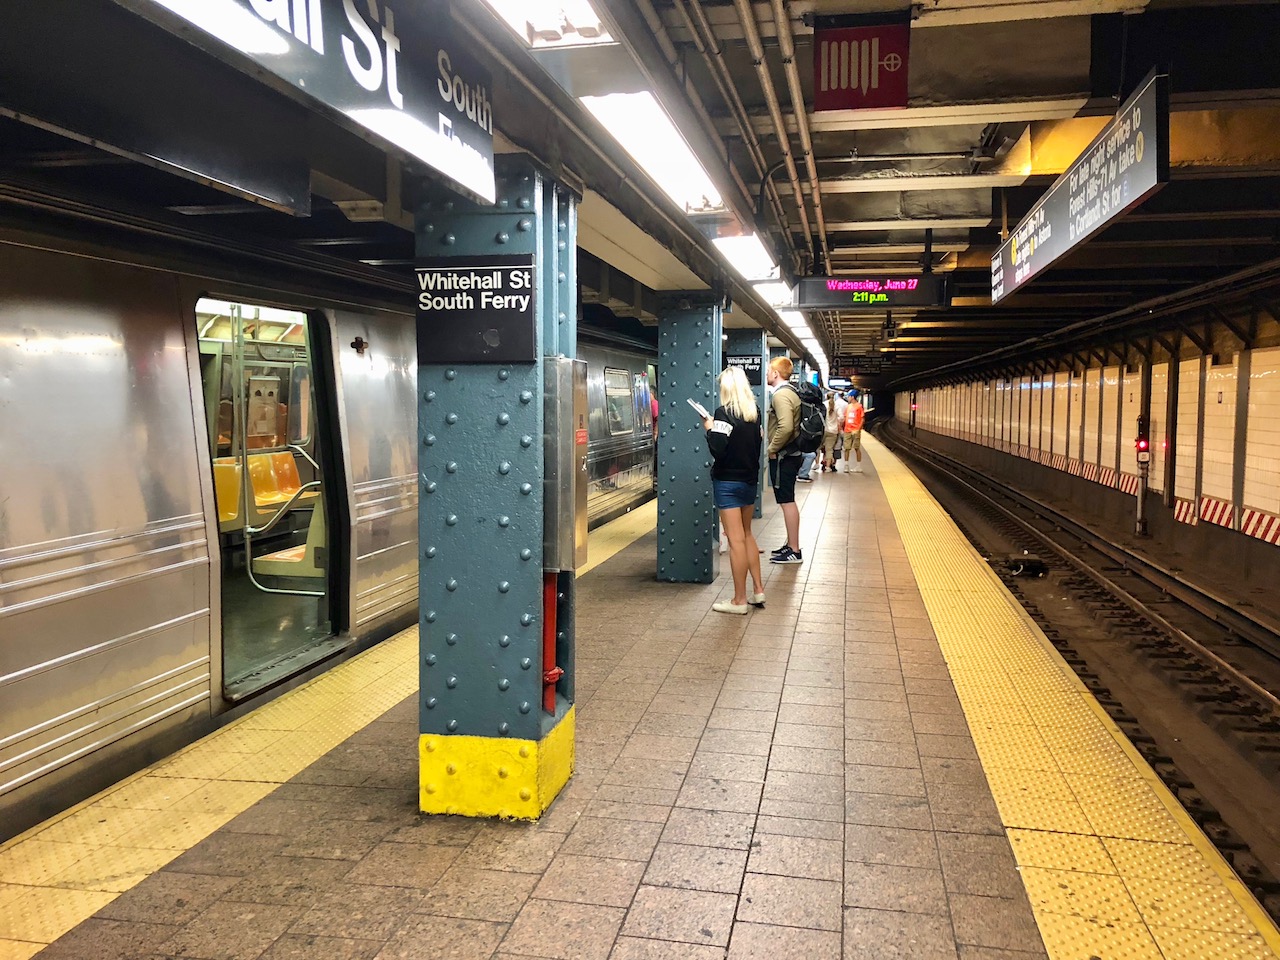 그 악명 높은 뉴욕 지하철은 어디로 갔나?